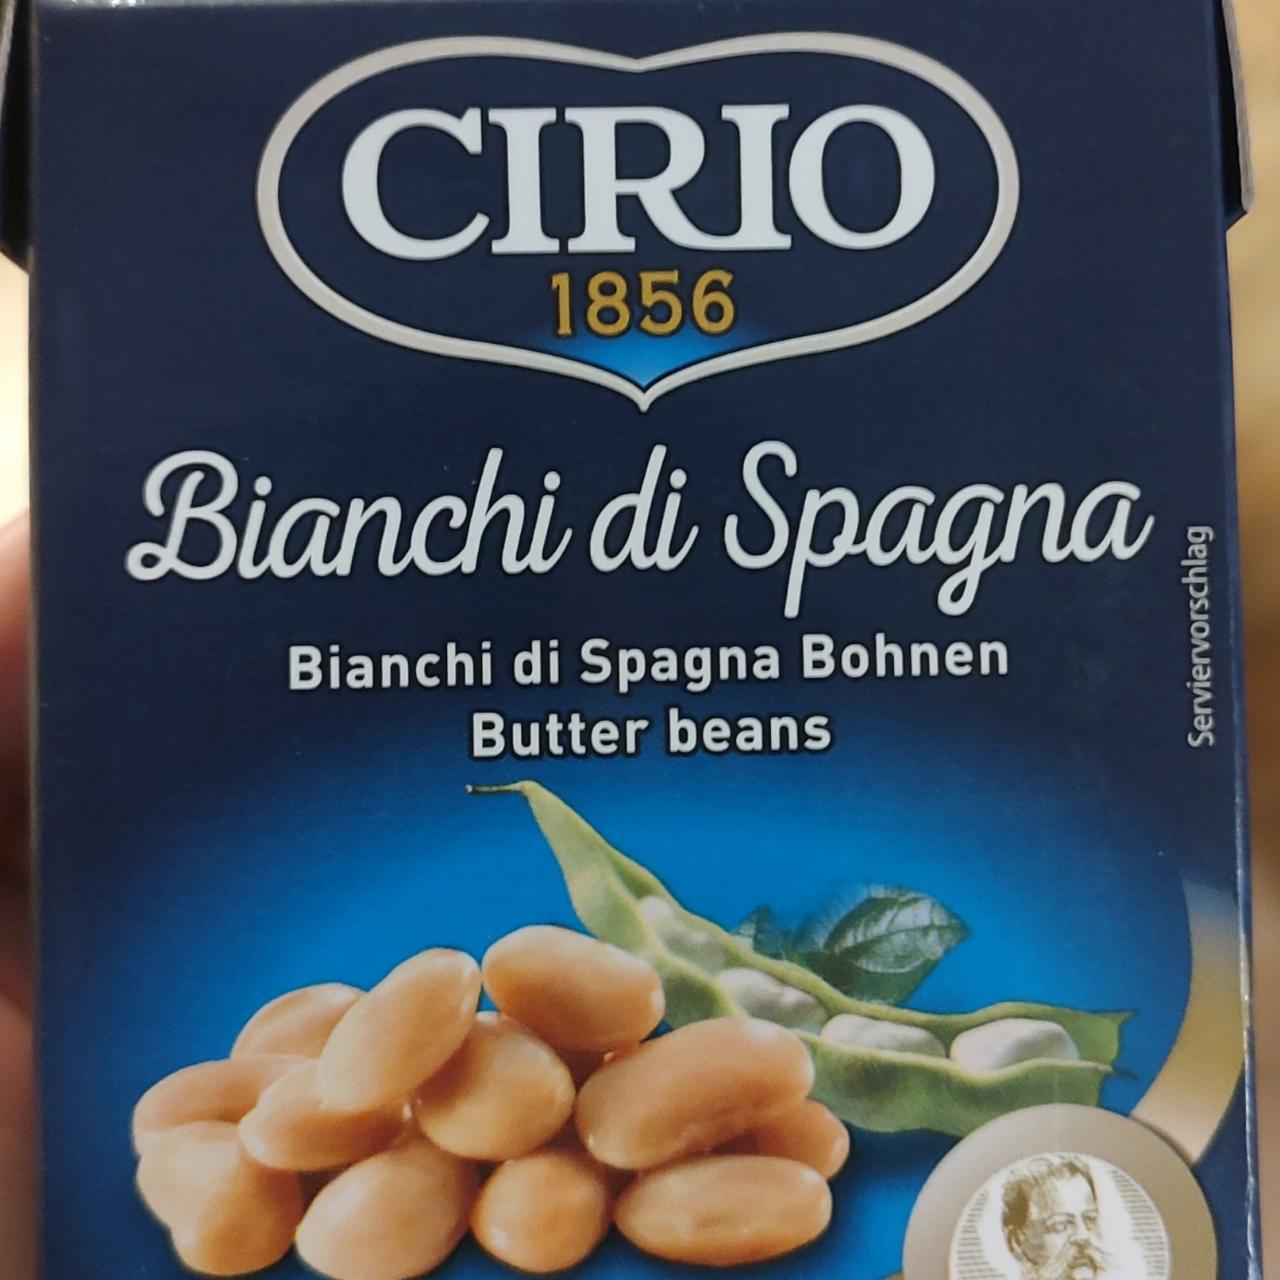 Fotografie - Bianchi di Spagna Butter beans CIRIO